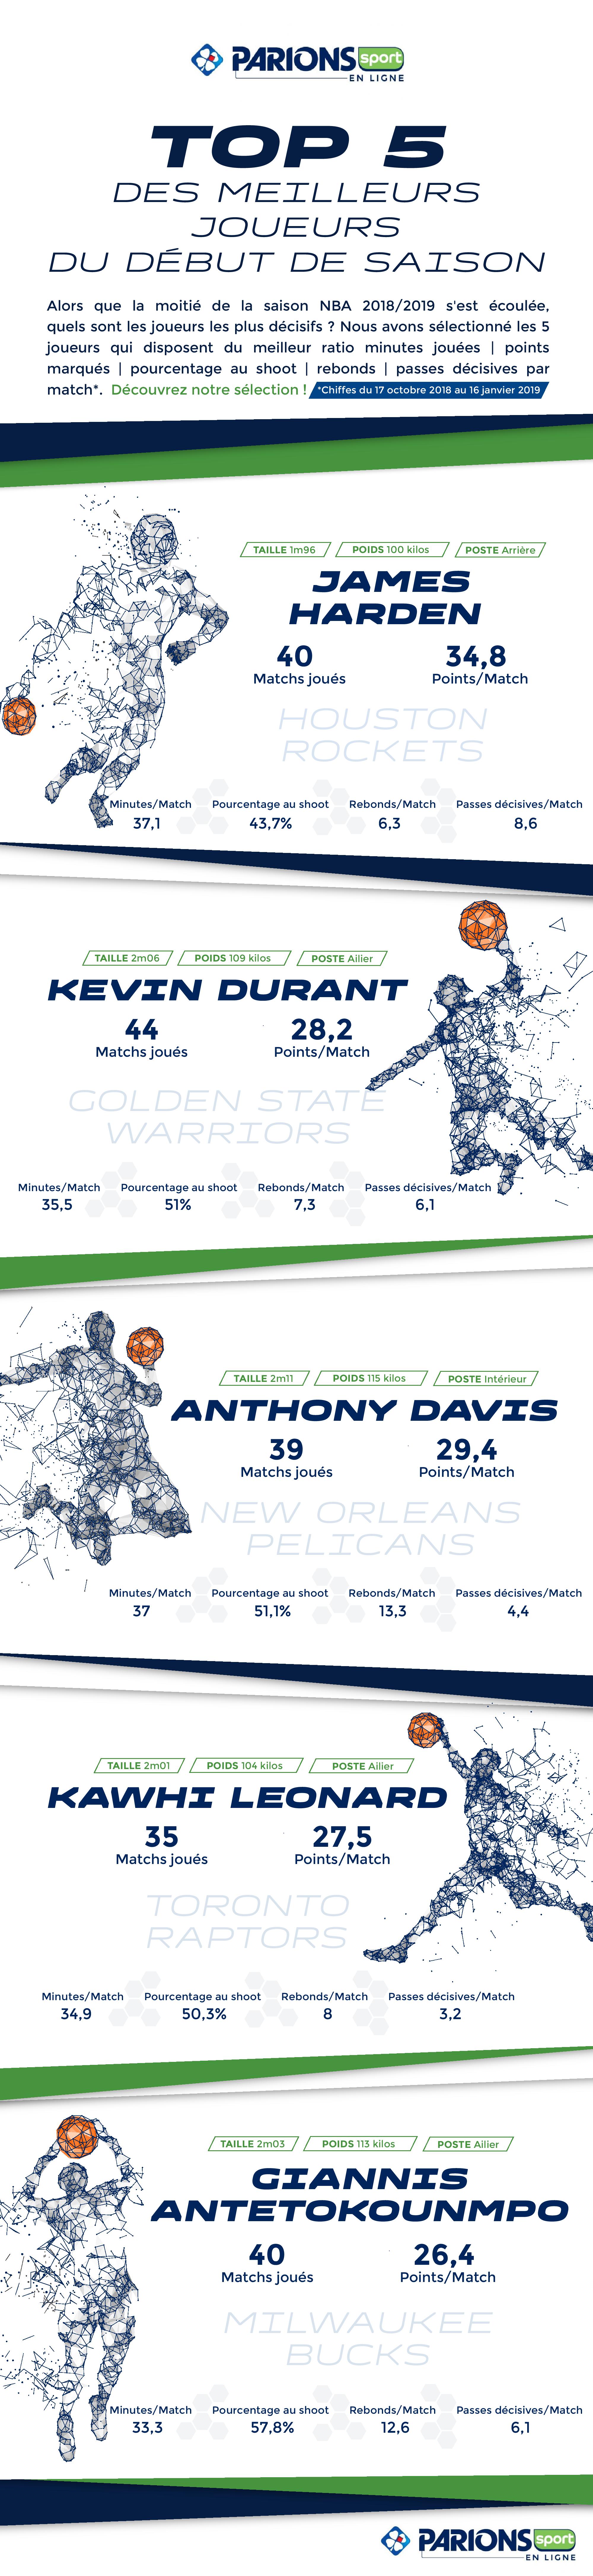 Infographie NBA TOP 5 des meilleurs joueurs du début de saison